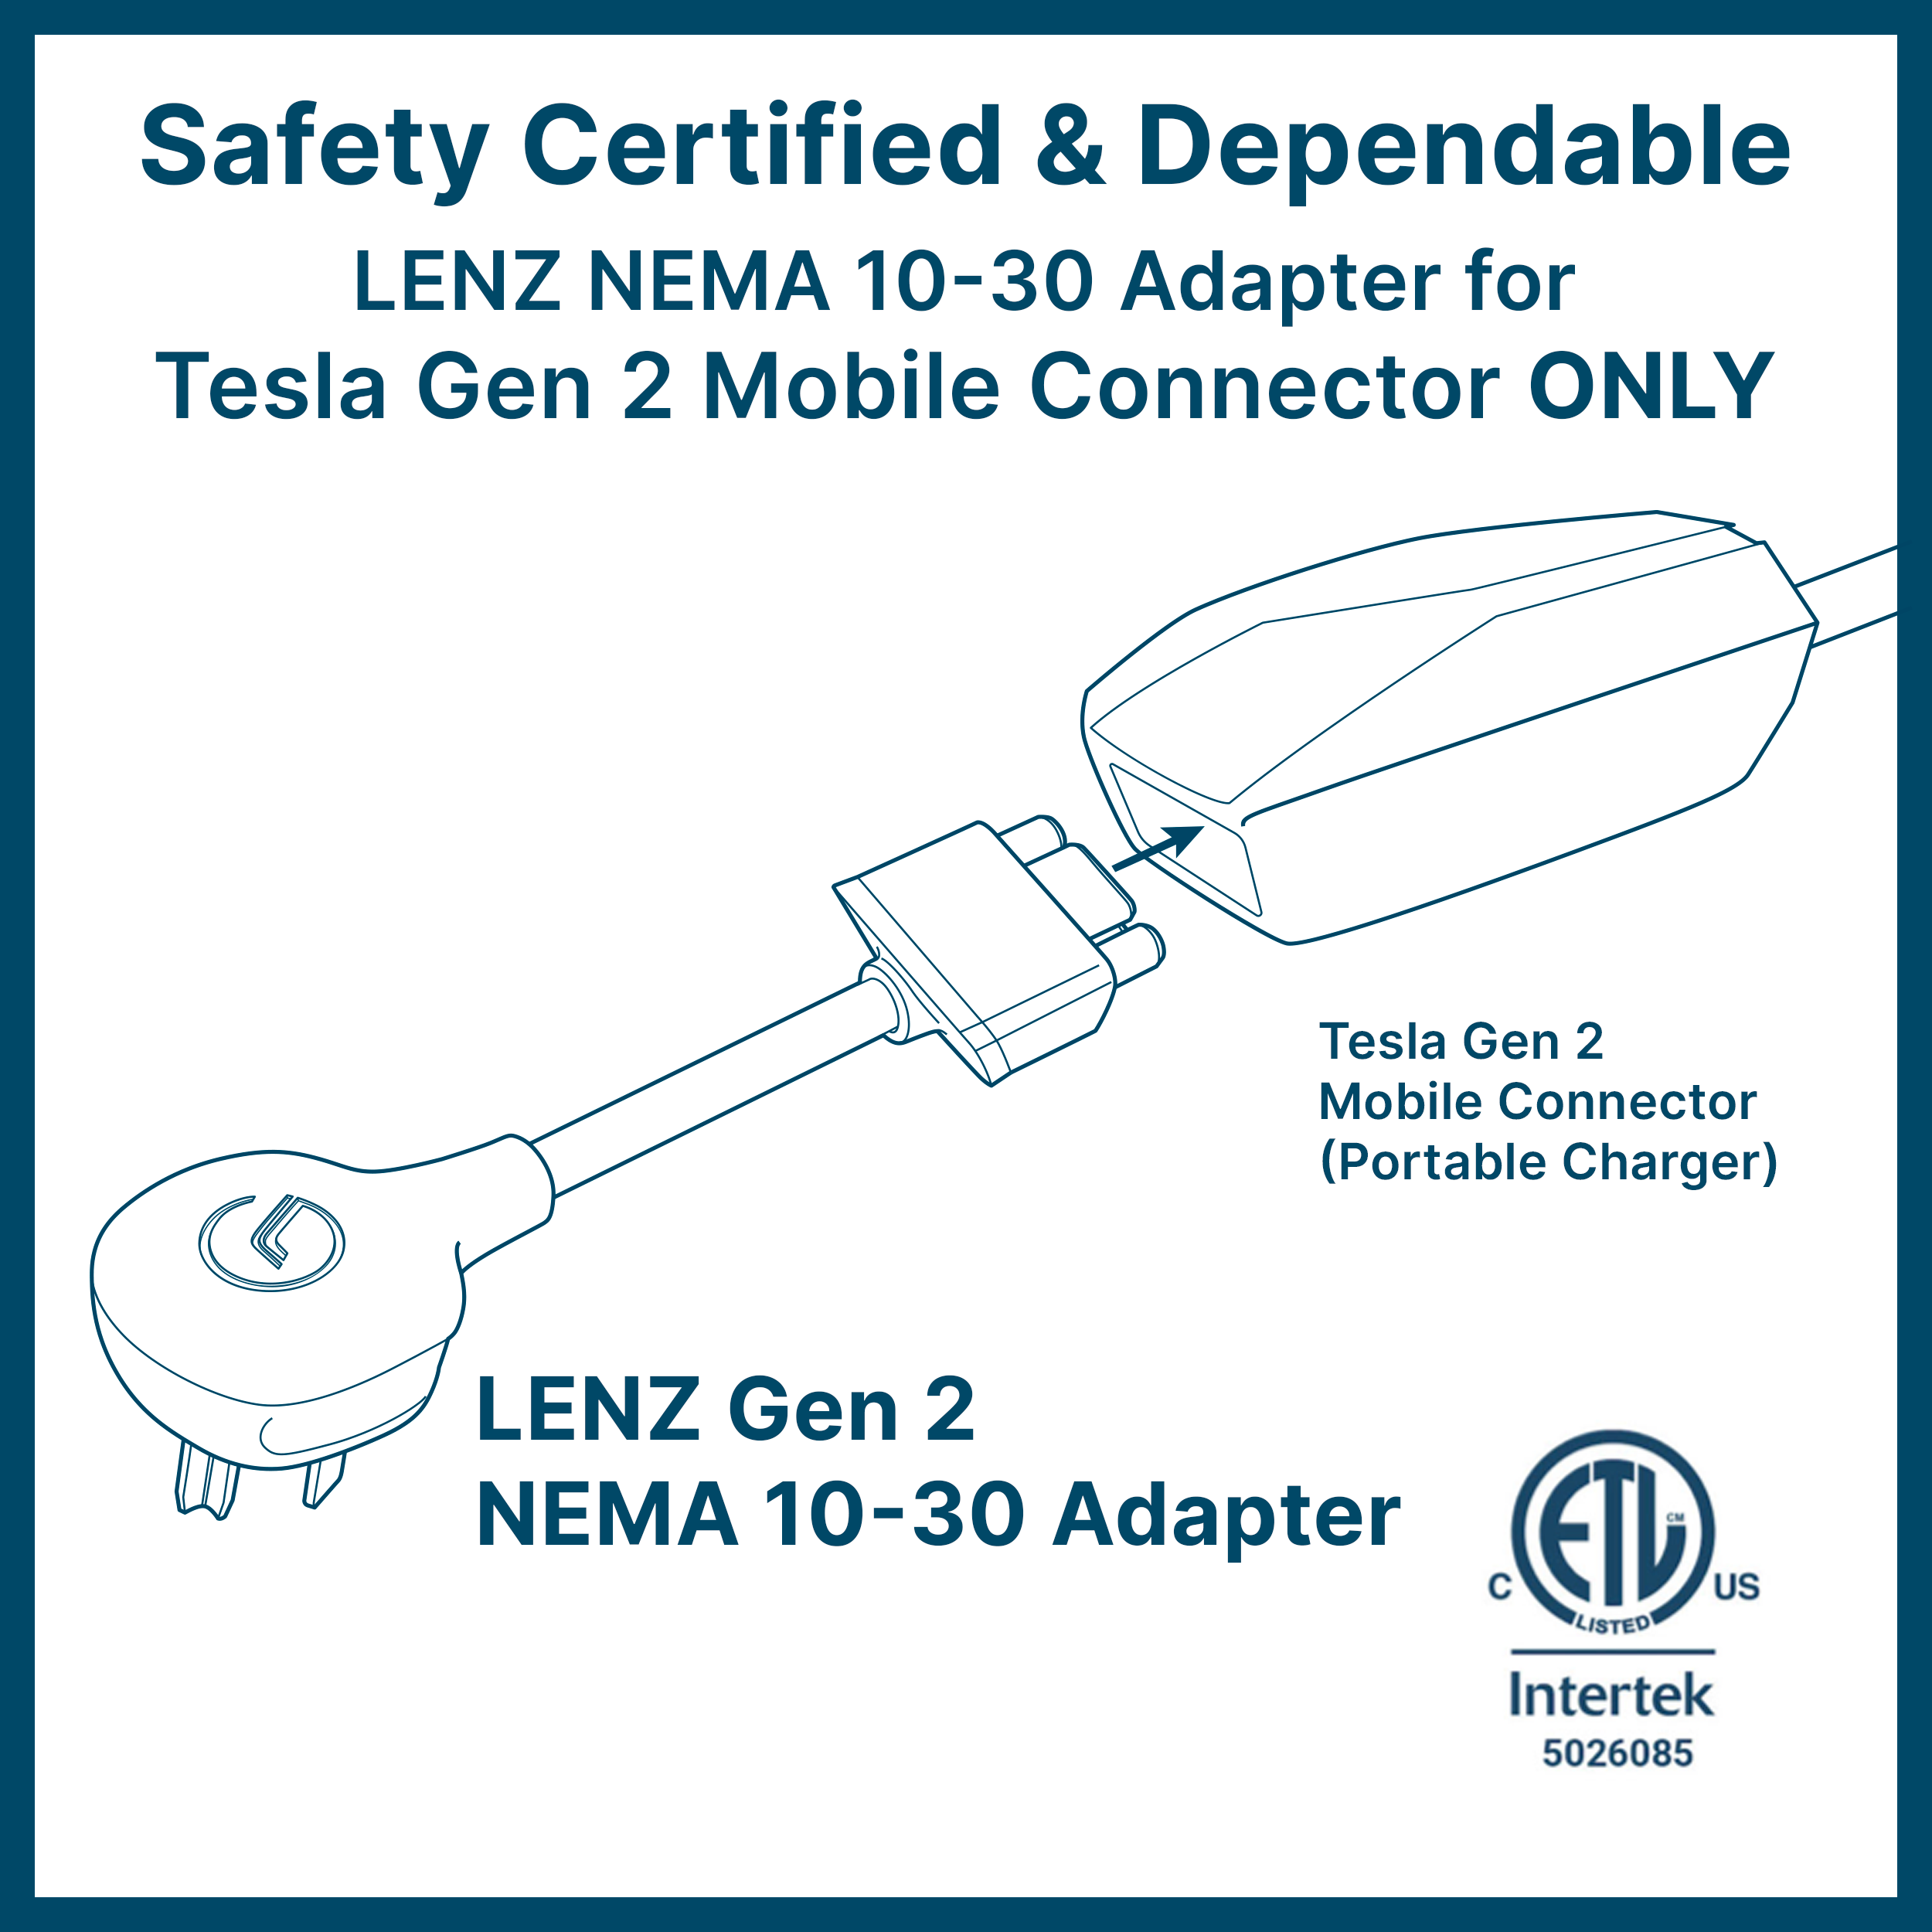 NEMA 10-30 Tesla Mobile Connector Gen 2 Adapter